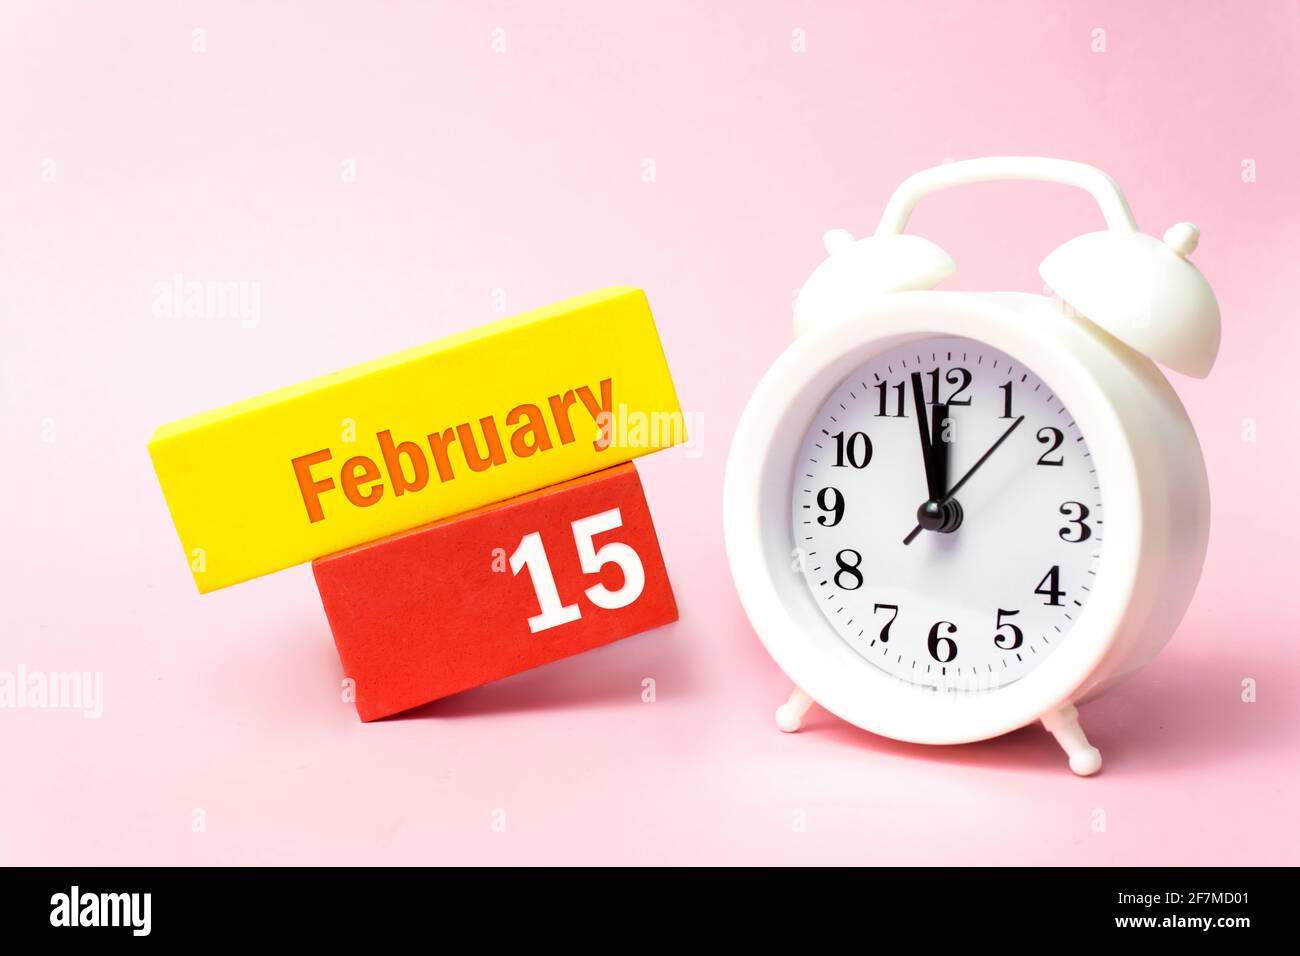 Februar. Tag 15 des Monats, Kalenderdatum. Weißer Wecker auf pastellrosa Hintergrund. Winter Monat, Tag des Jahres Konzept Stockfoto